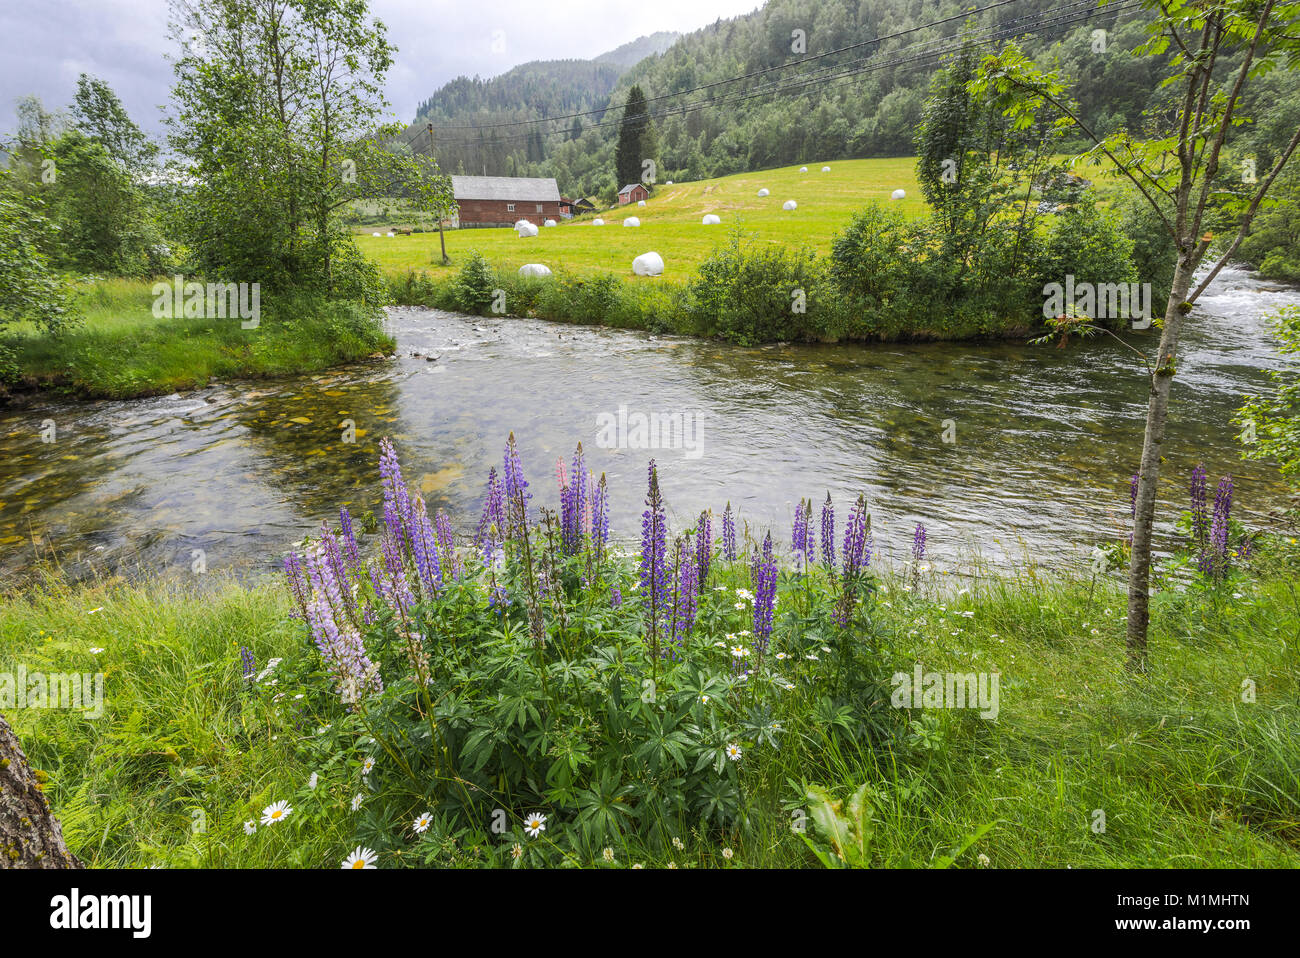 Norwegian ferme près de Voss et Granvin, Norvège, Scandinavie, paysage idyllique d'herbage et de fleurs sur le bord d'une petite rivière Banque D'Images